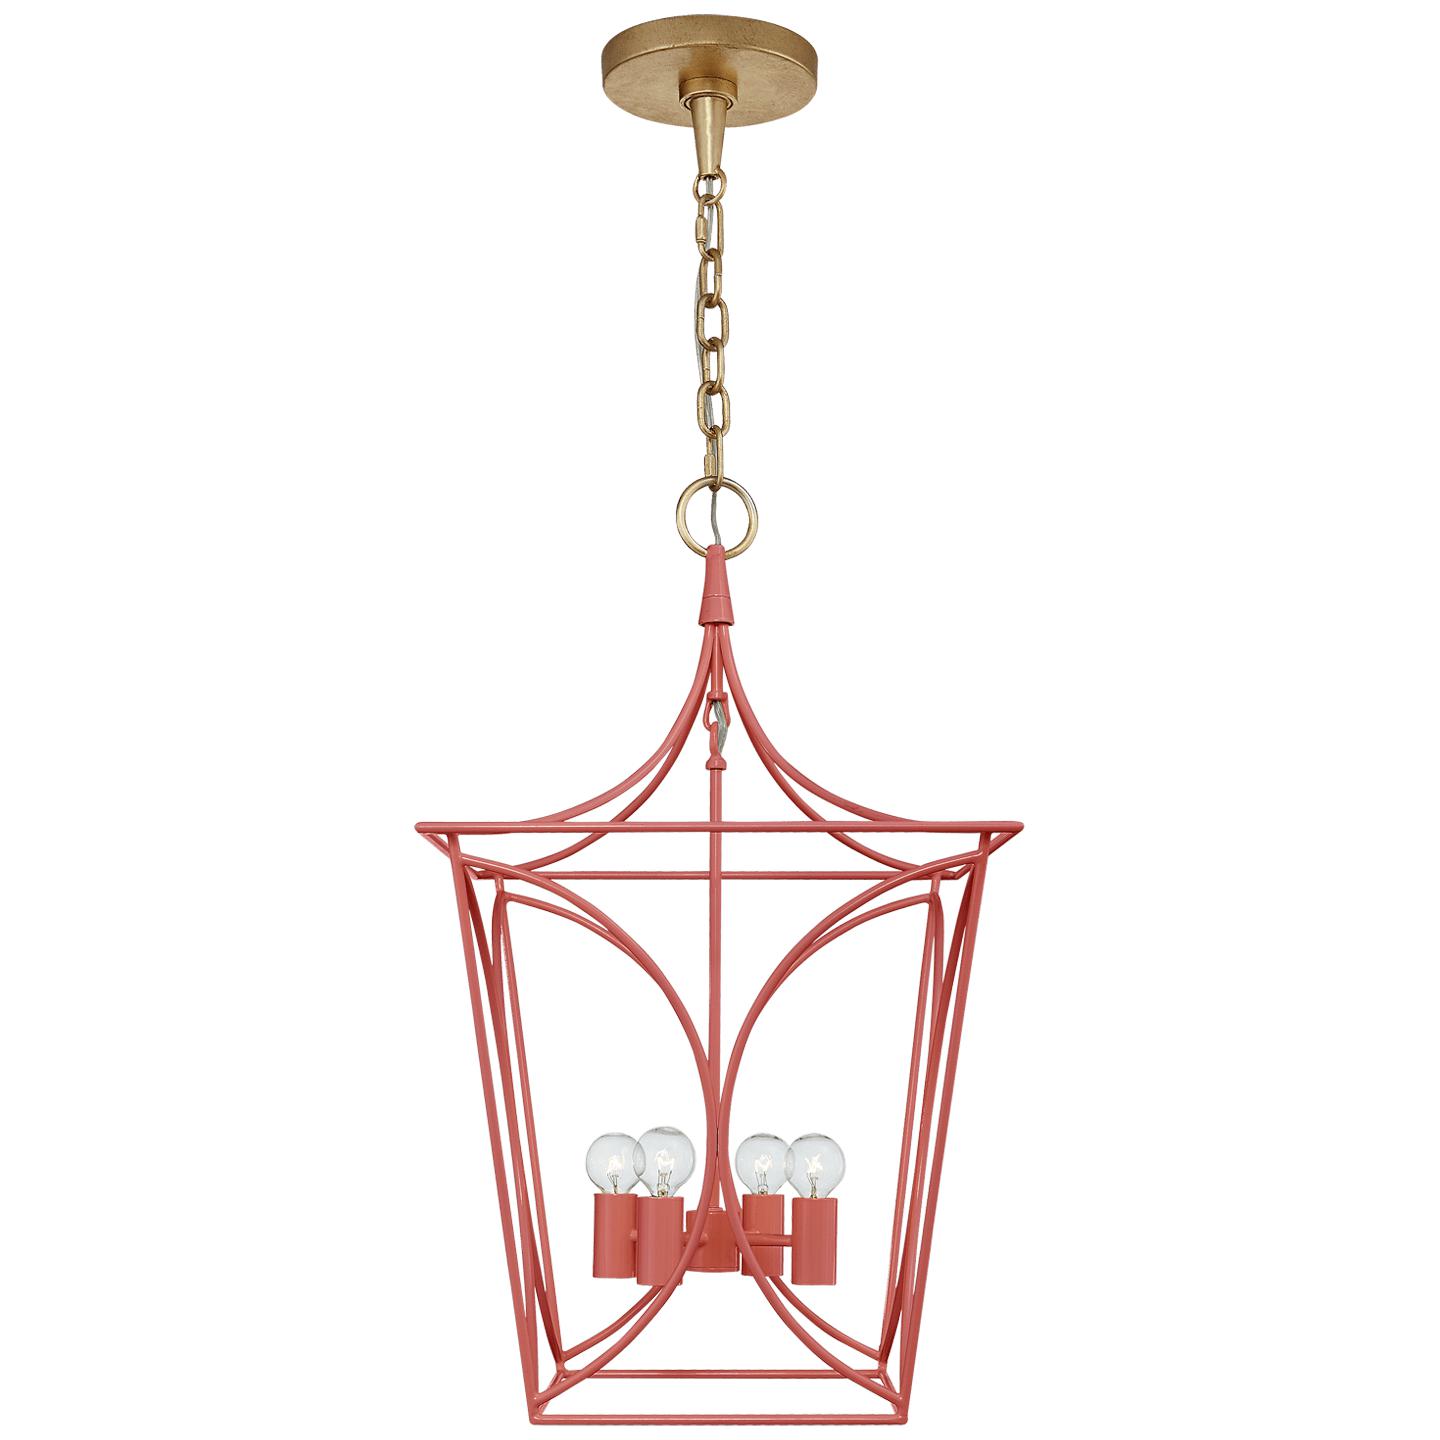 Купить Подвесной светильник Cavanagh Small Lantern в интернет-магазине roooms.ru